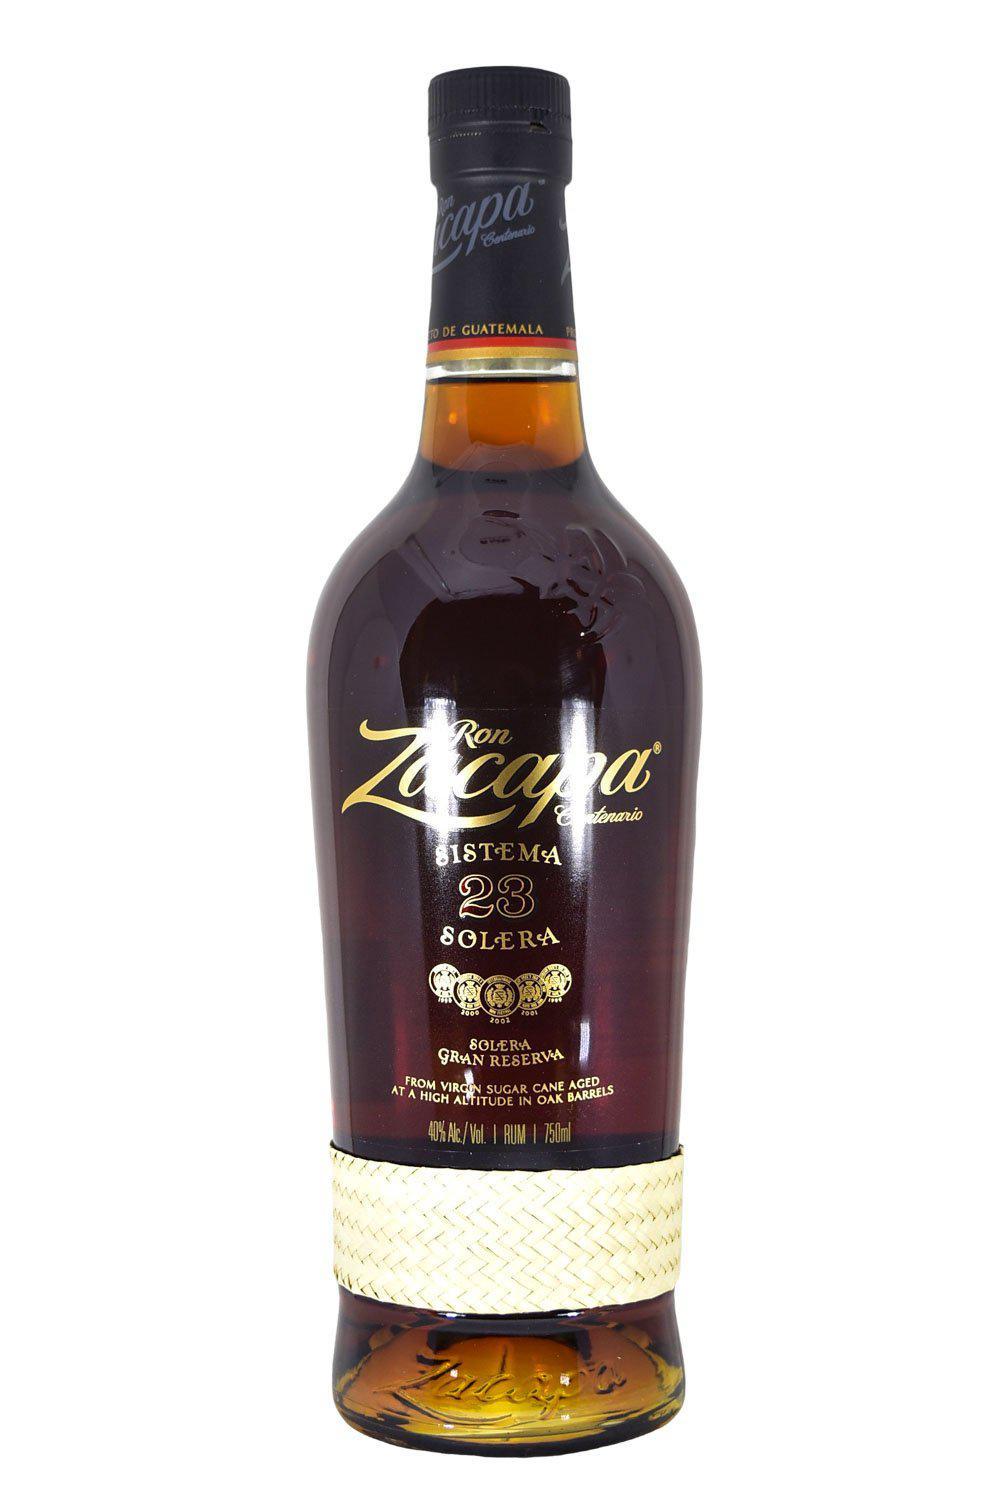 Ron Zacapa Centenario 23 Rum Review